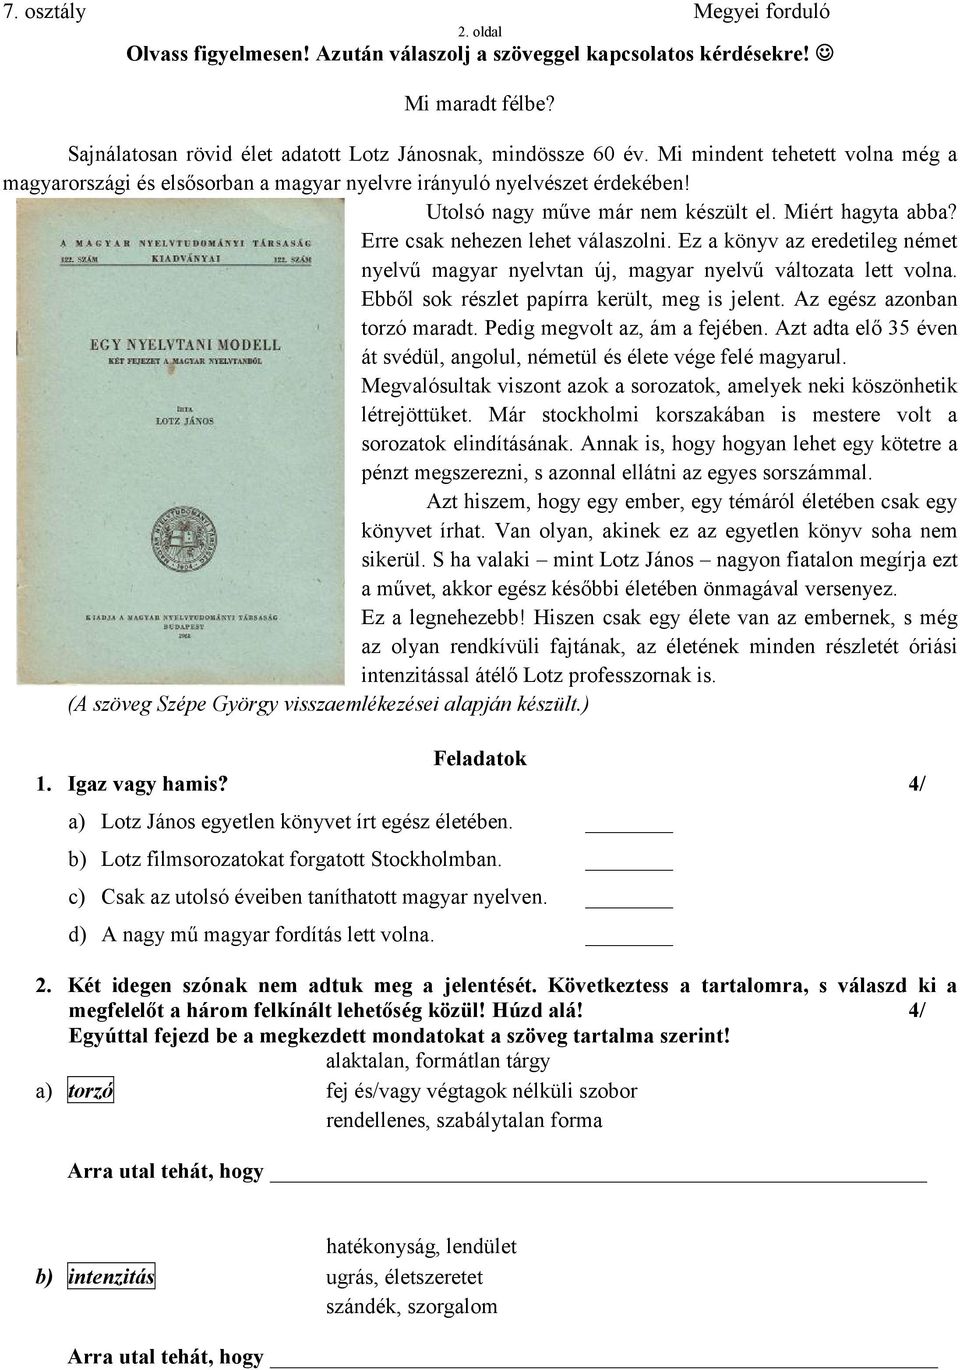 Ez a könyv az eredetileg német nyelvű magyar nyelvtan új, magyar nyelvű változata lett volna. Ebből sok részlet papírra került, meg is jelent. Az egész azonban torzó maradt.